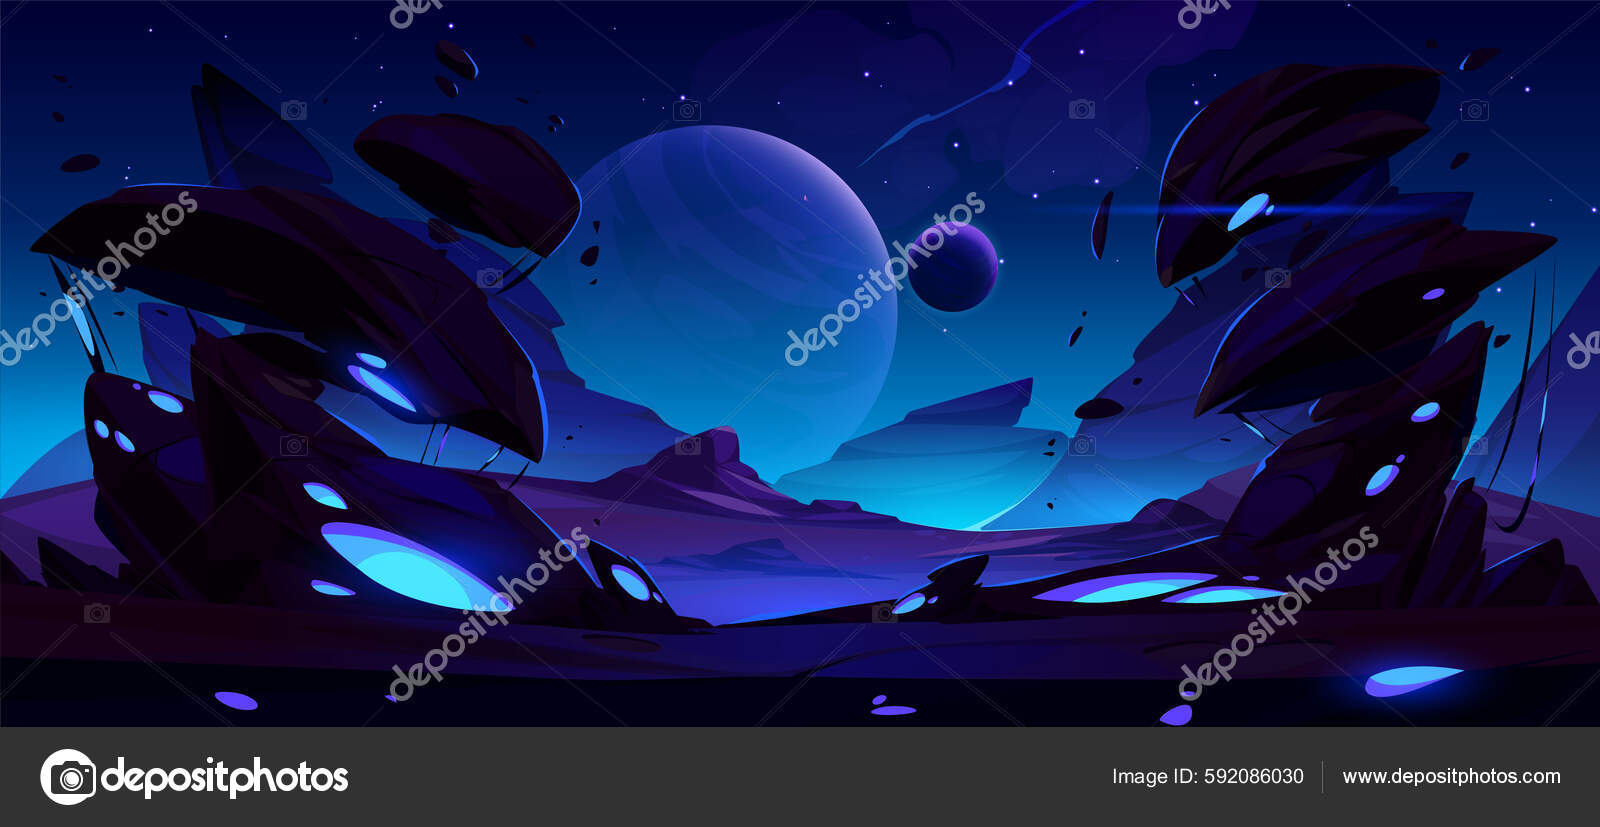 Alienígena Conteúdo grátis , Cartoon Alien, roxo, violeta